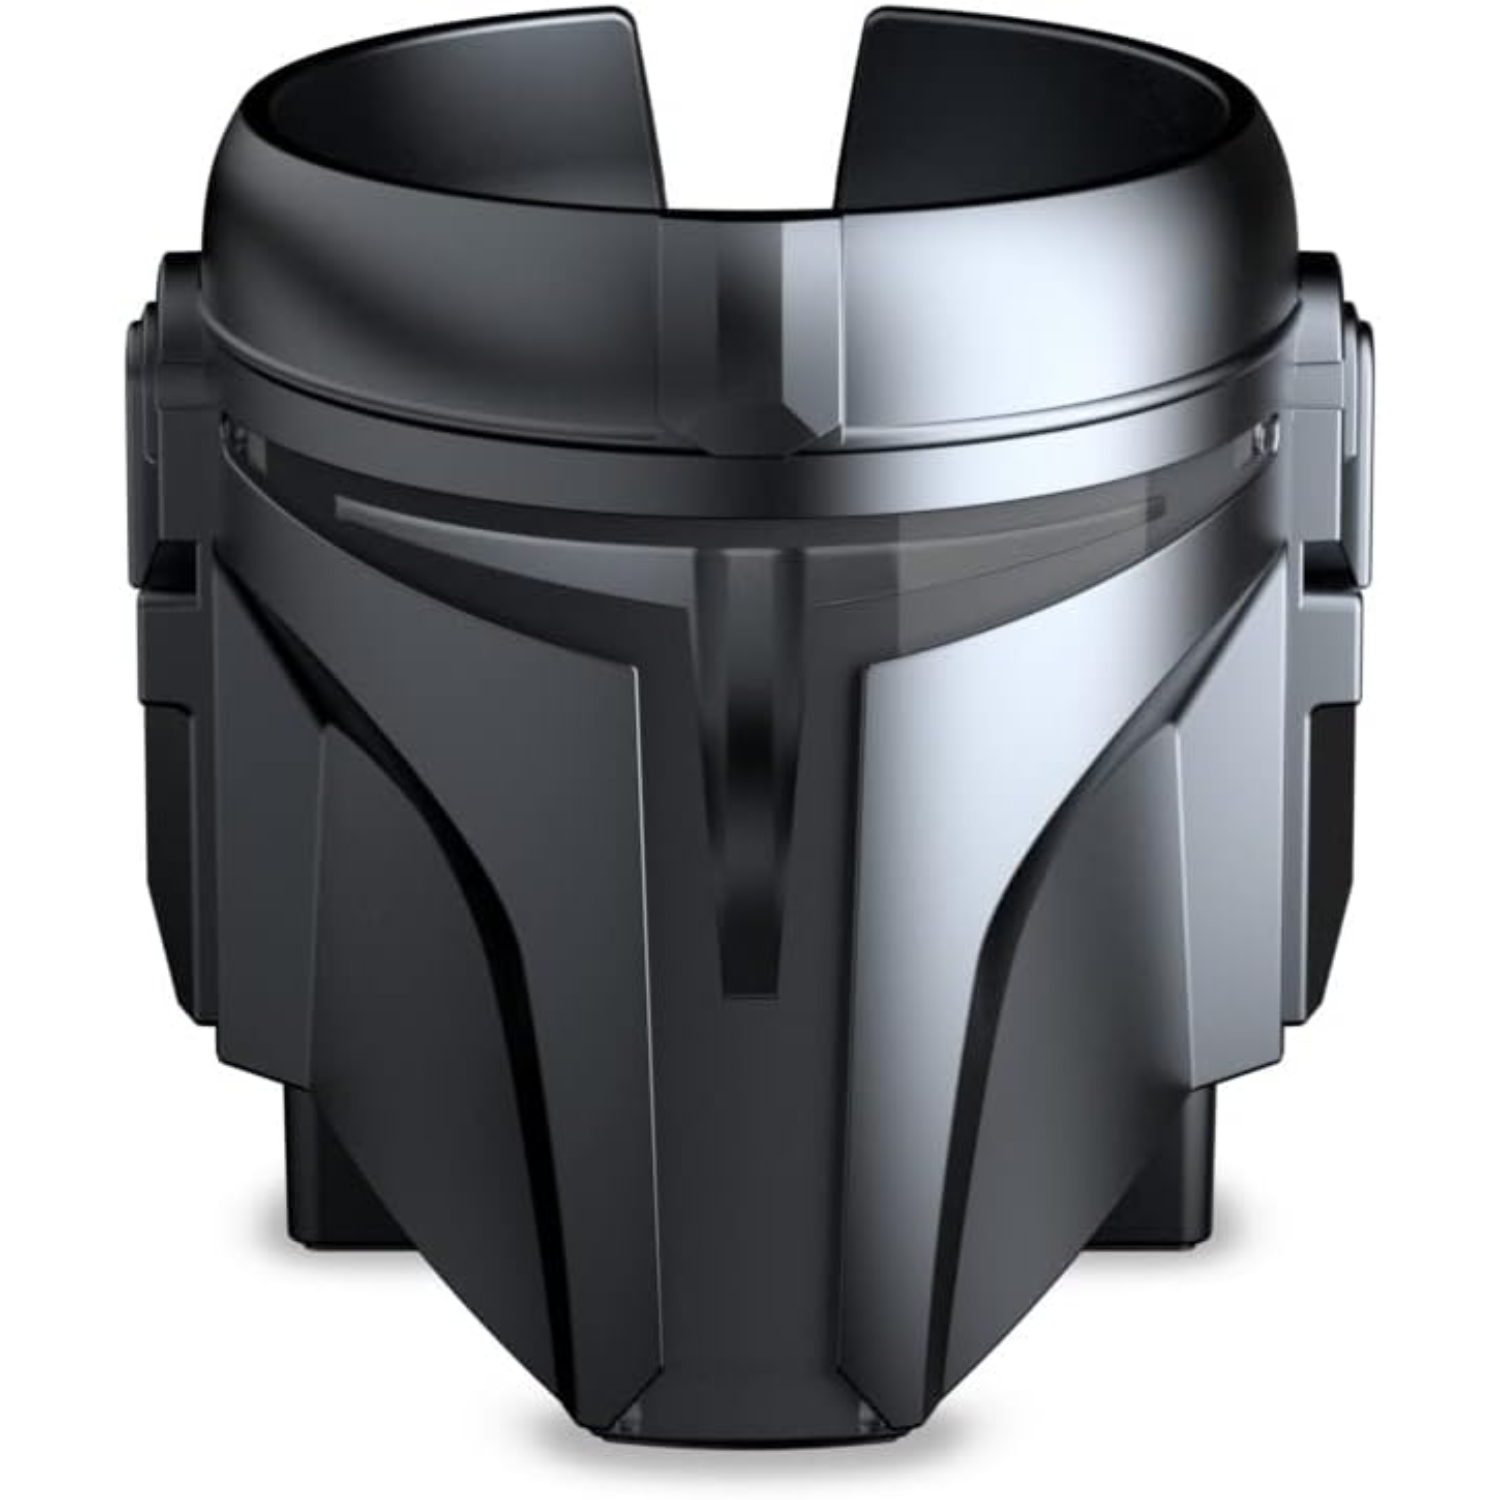 Soporte Echo Dot Edicion Limitada Star Wars Darth Vader Stand DISNEY